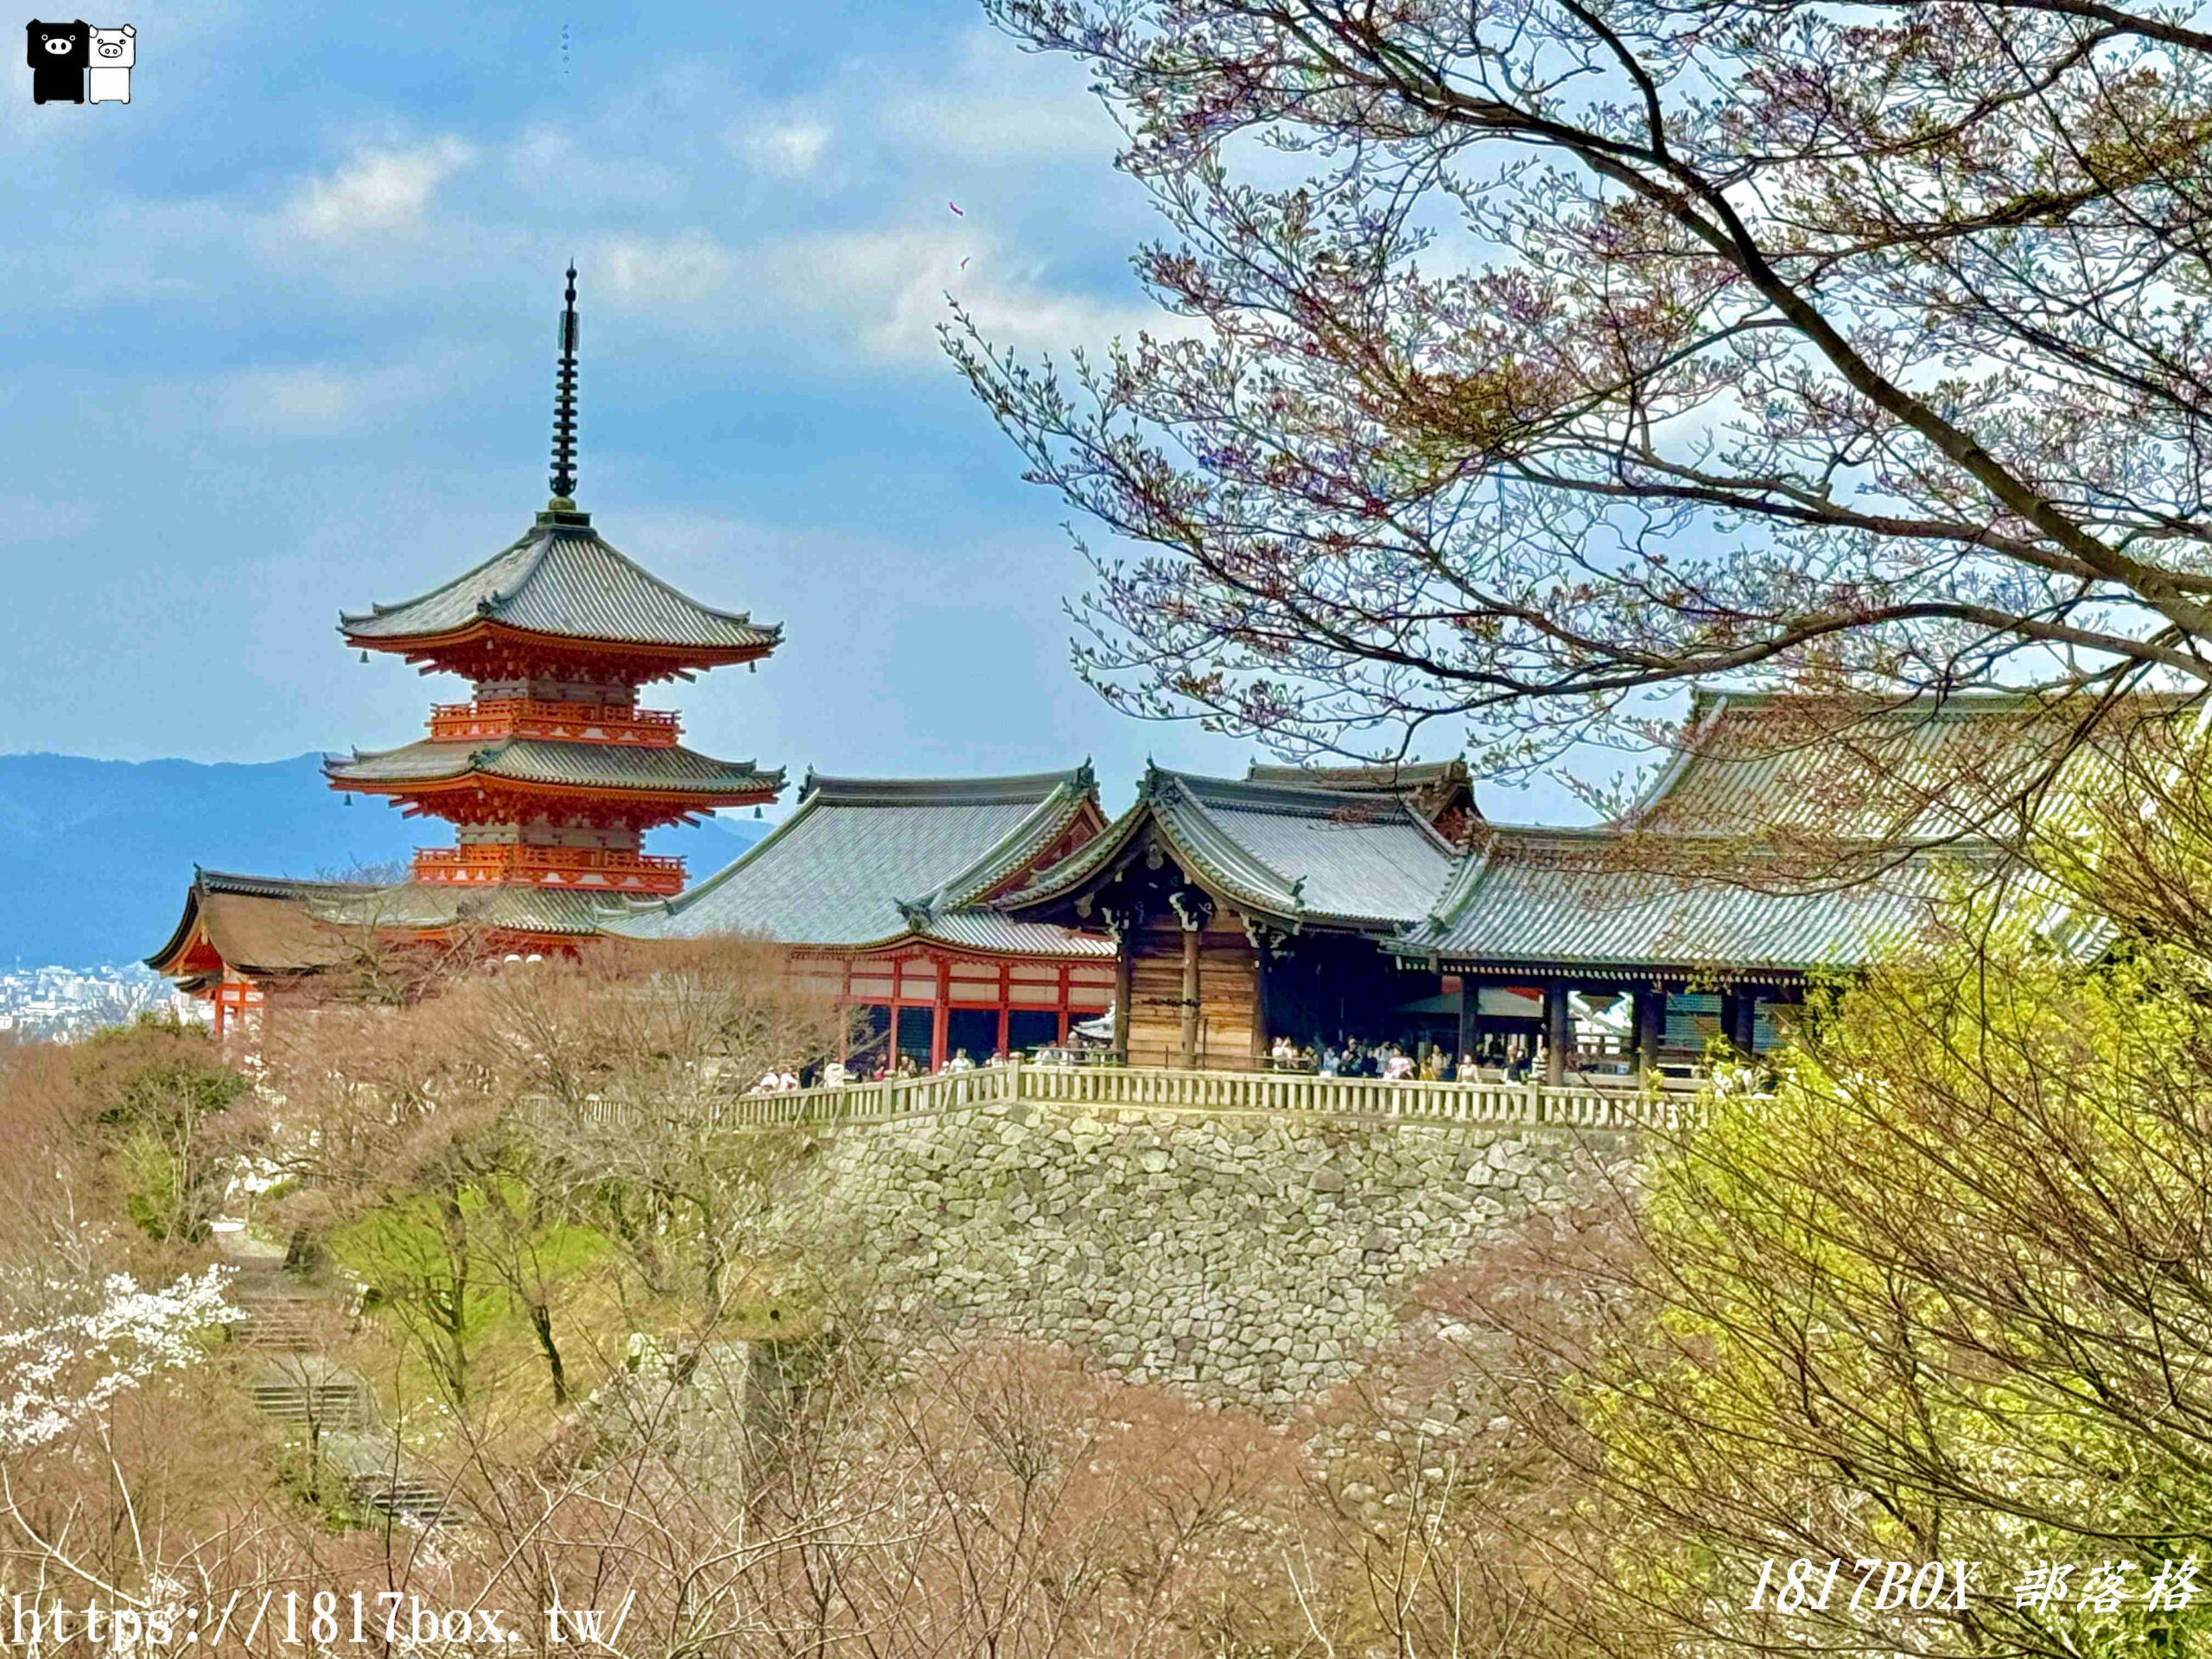 【京都景點】音羽山清水寺。京都第一名所。京都人氣景點。京都必遊景點 @1817BOX部落格